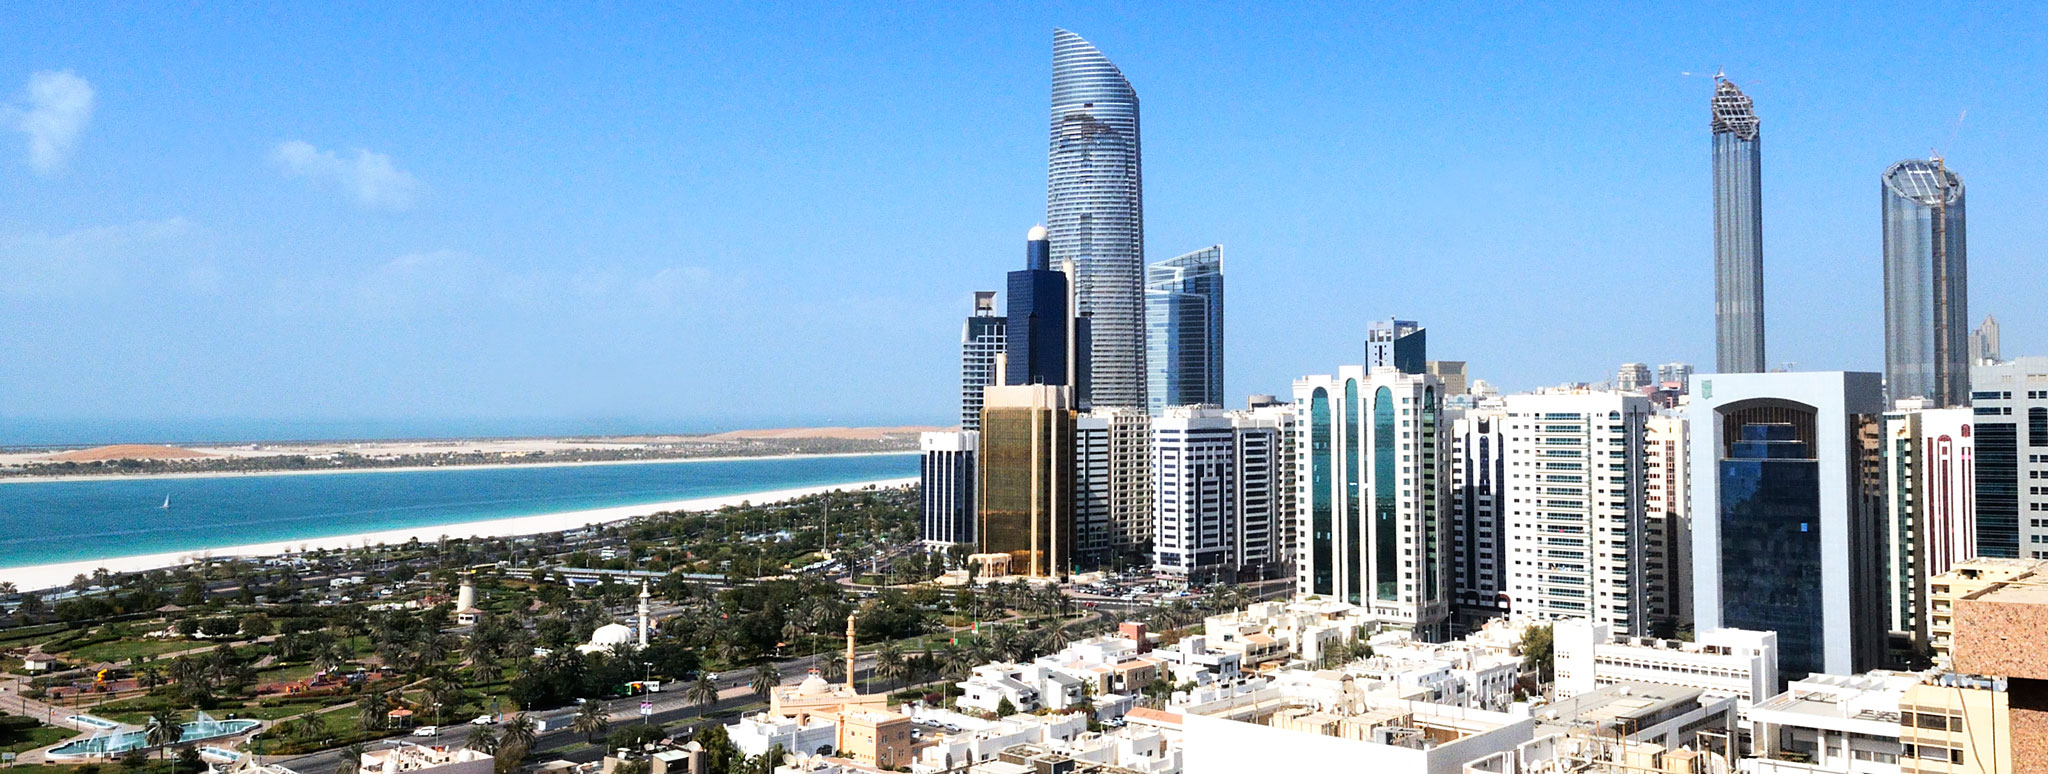 Abu-Dhabi-city